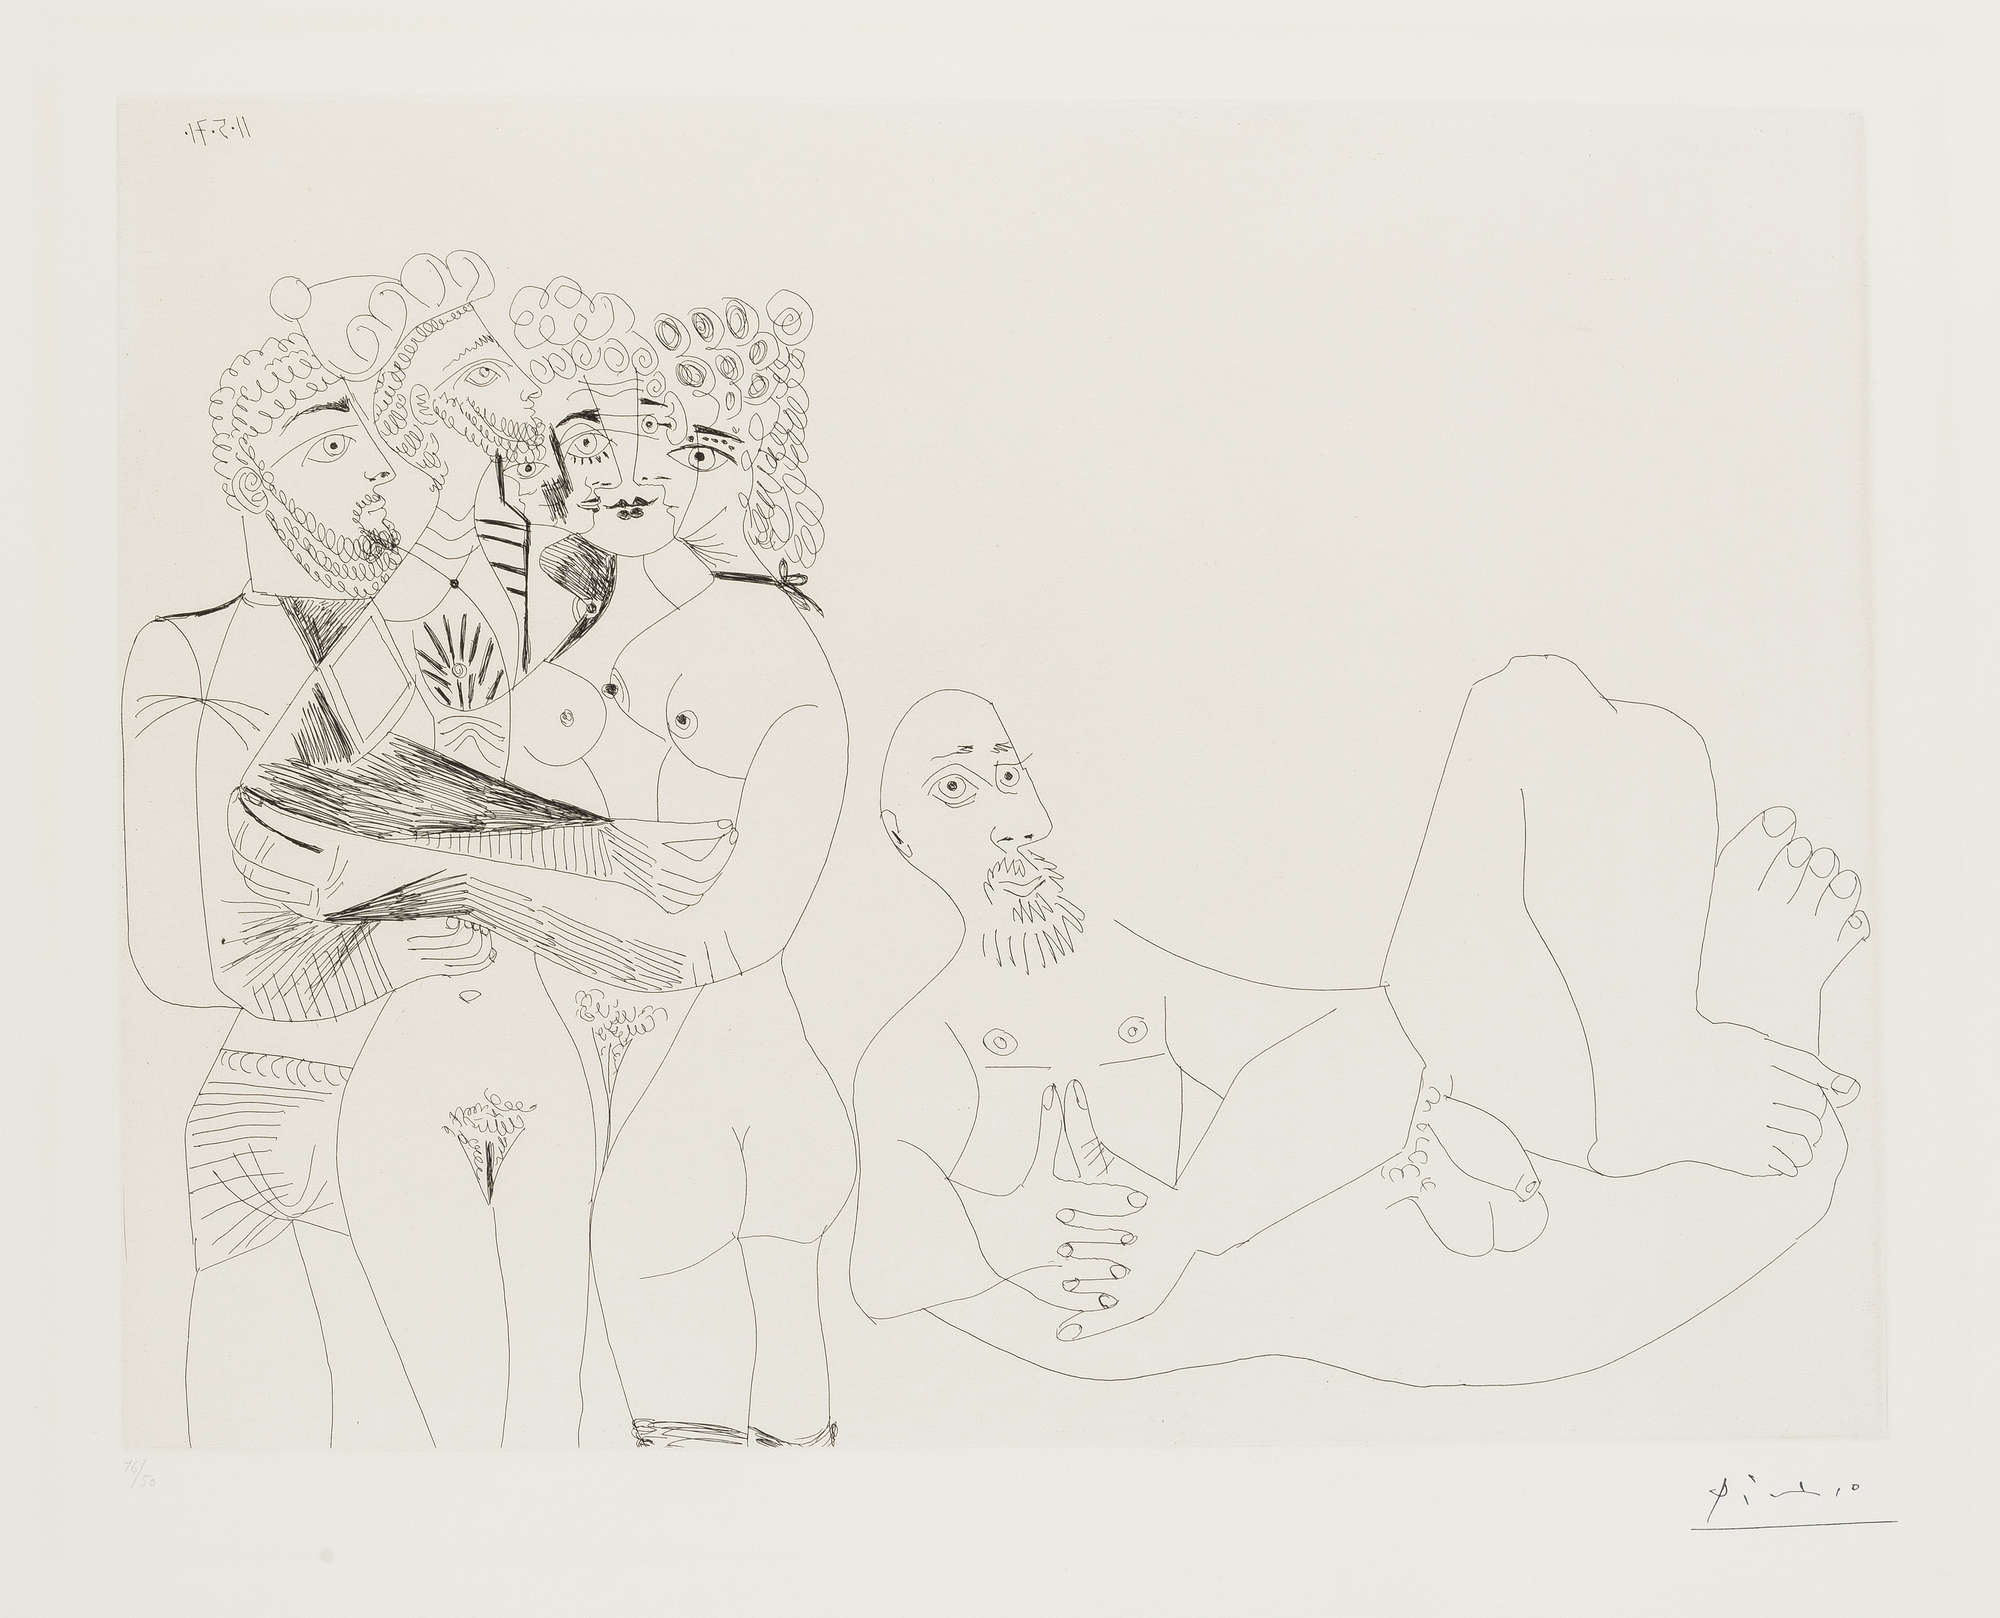 【販売通販】パブロ・ピカソ (PABLO PICASSO）「四人の裸婦」156シリーズ(No.49）1970年/1978年(刷り) 銅版画、エッチング